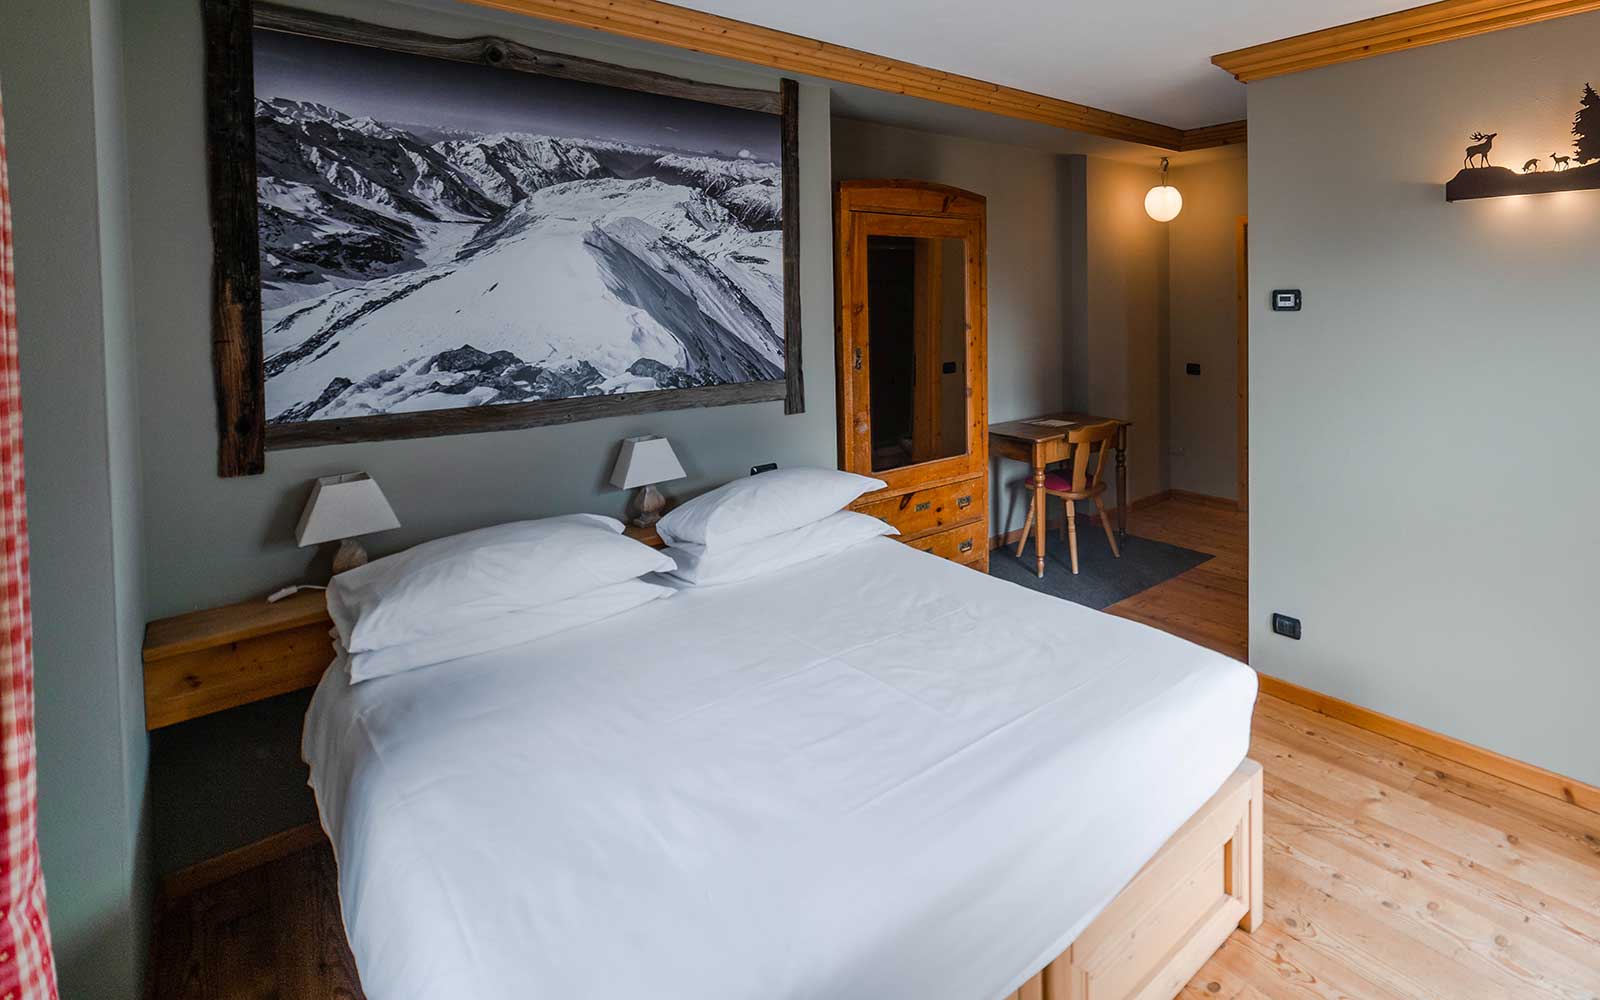 Dettaglio twobedroom1 Alpi & Golf in stile Alpino